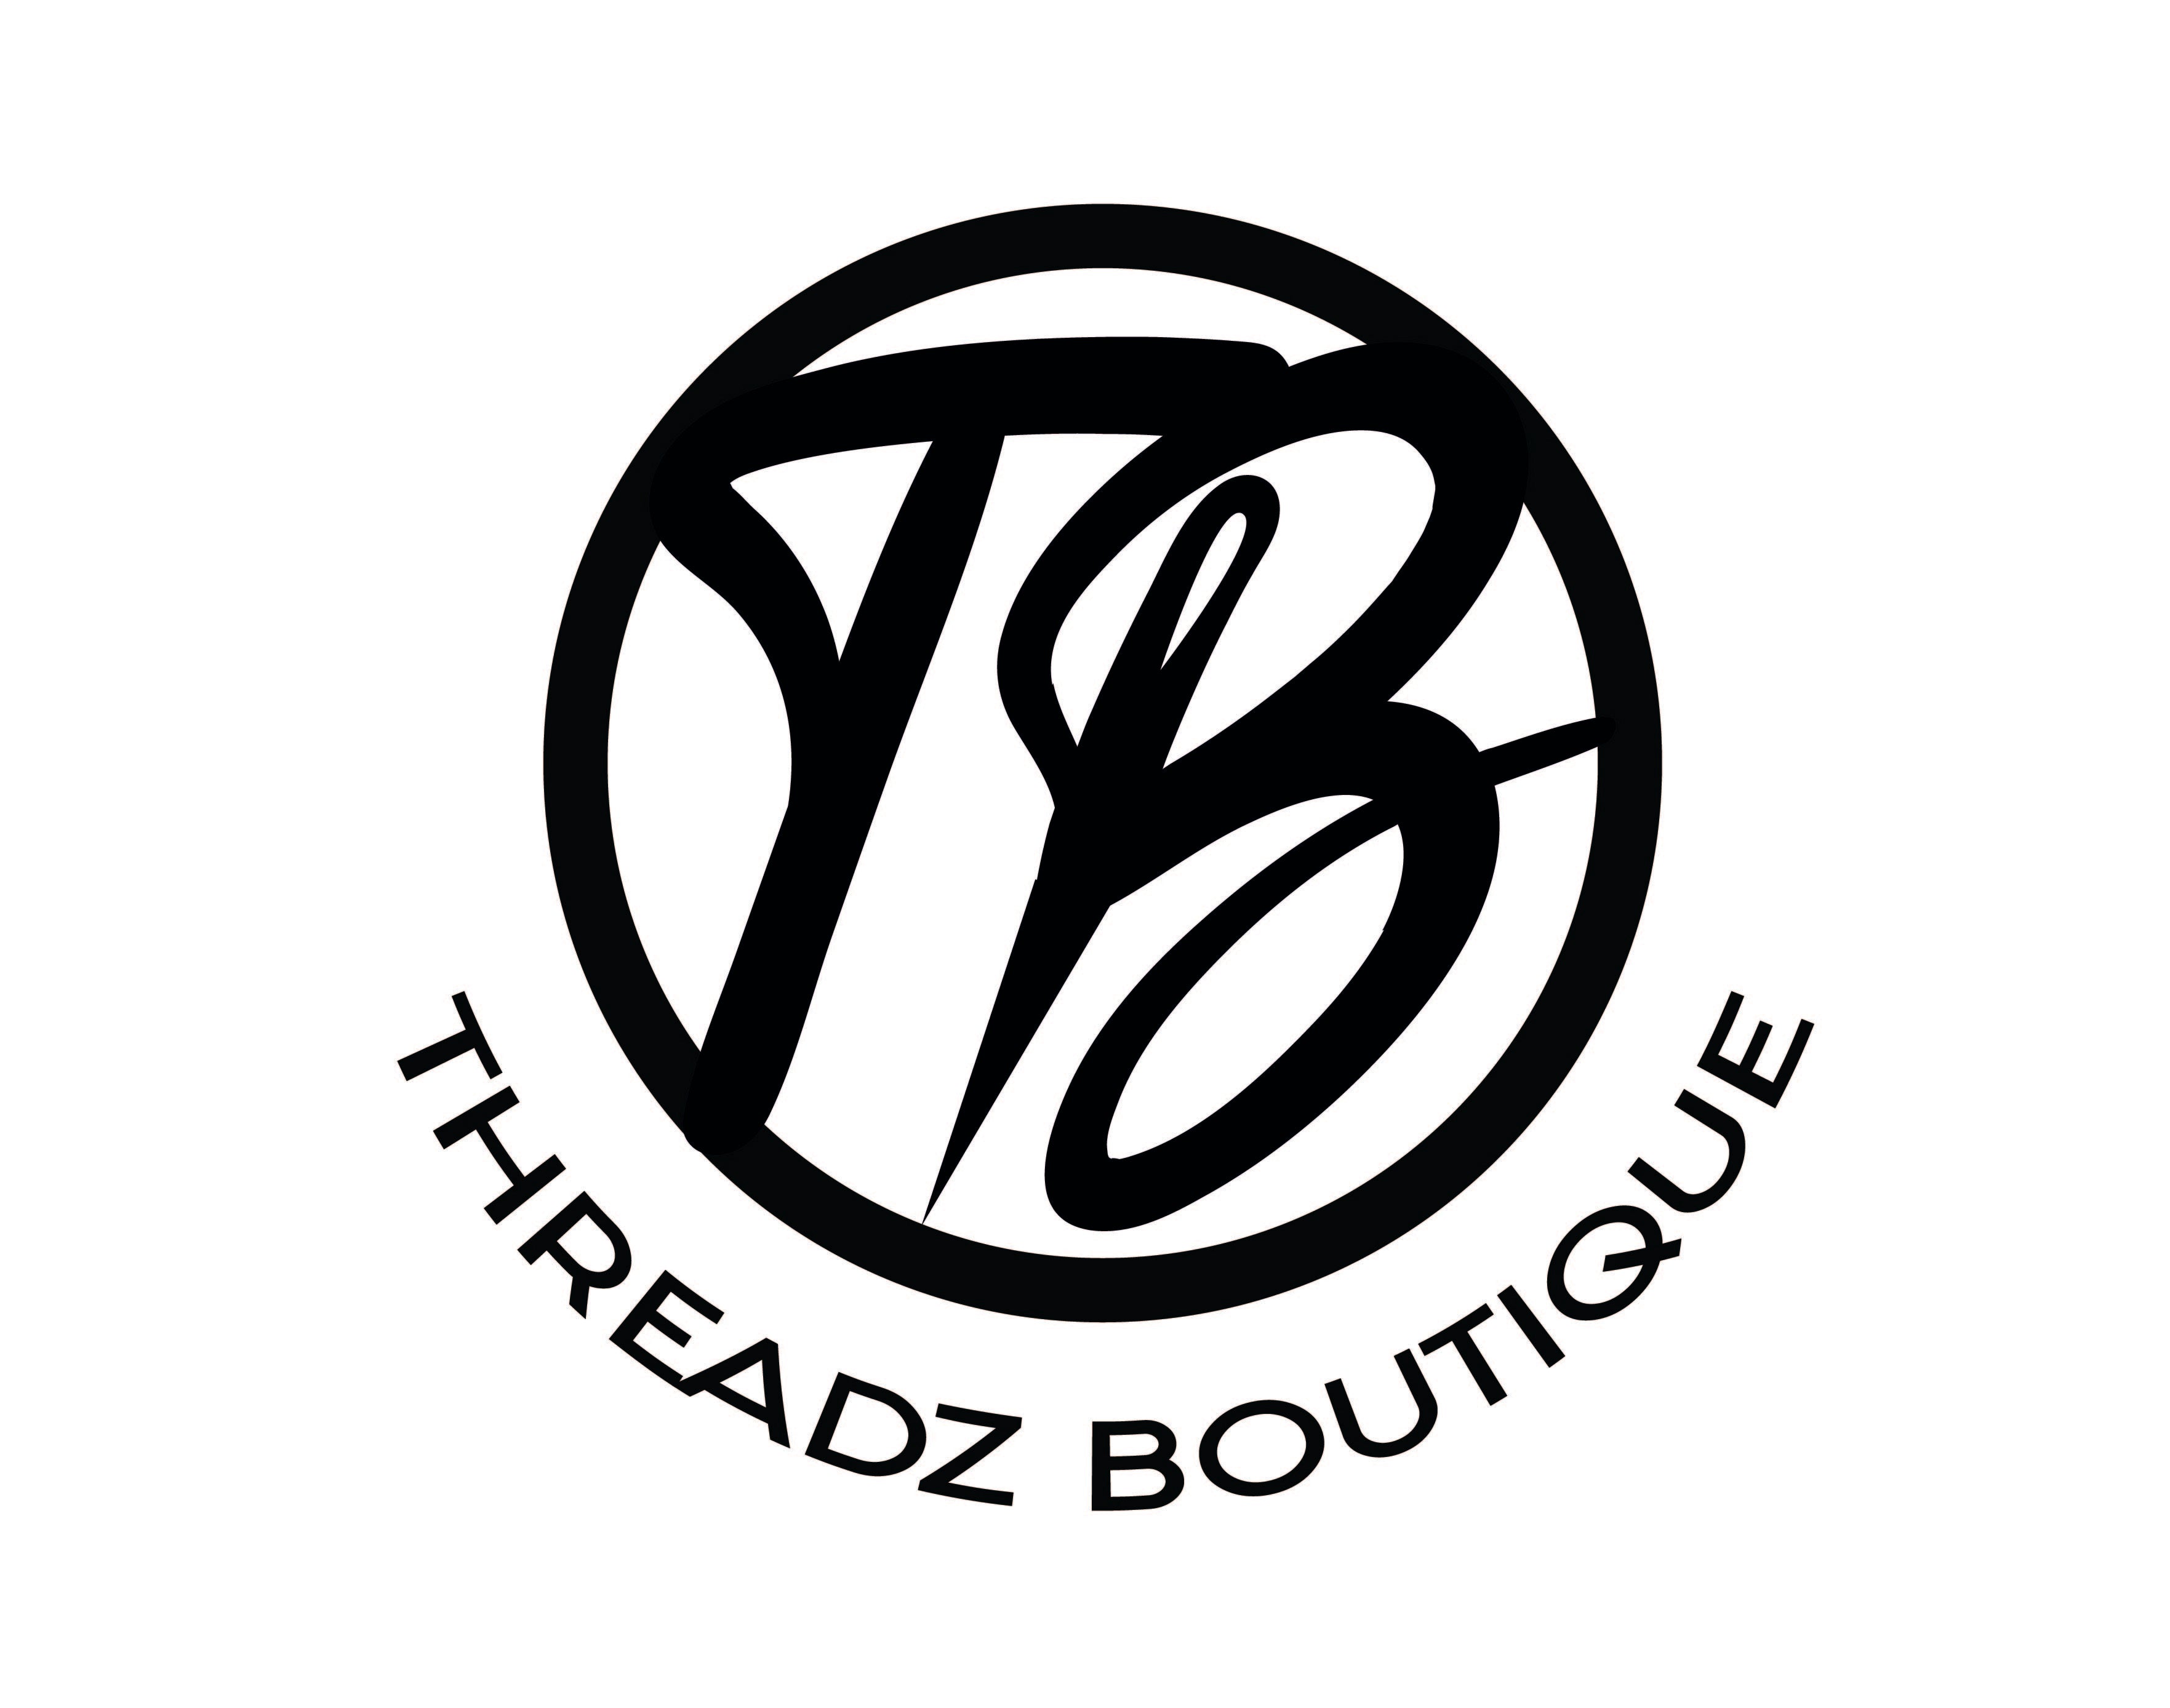 Threadz Boutique